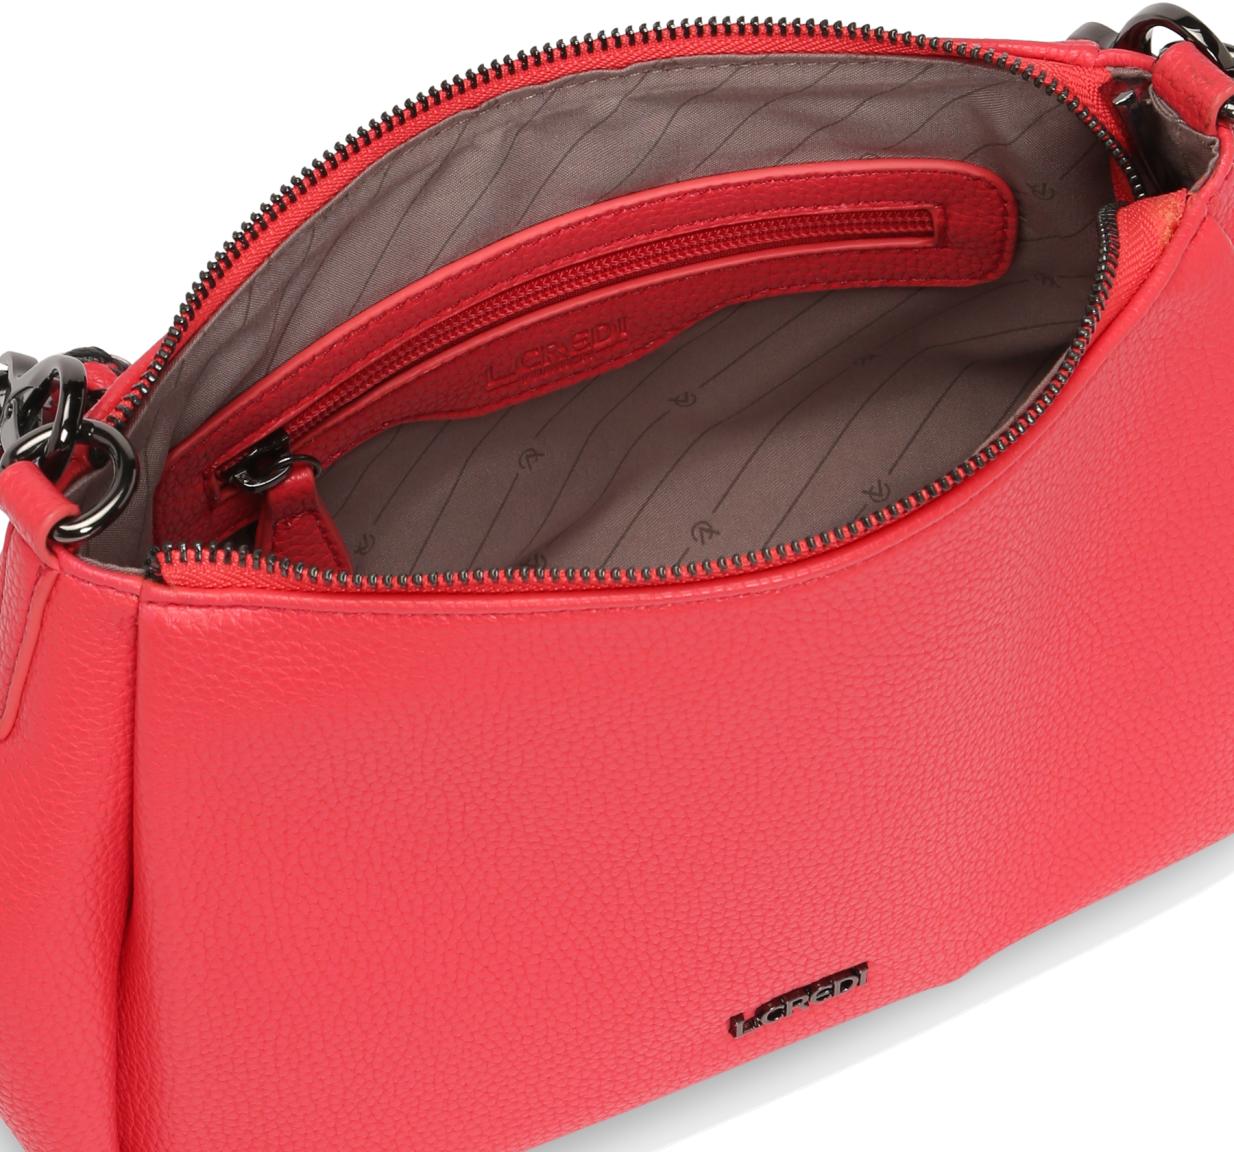 L.Credi auffällige Handtasche Kena Lipstick pink rot vegan 